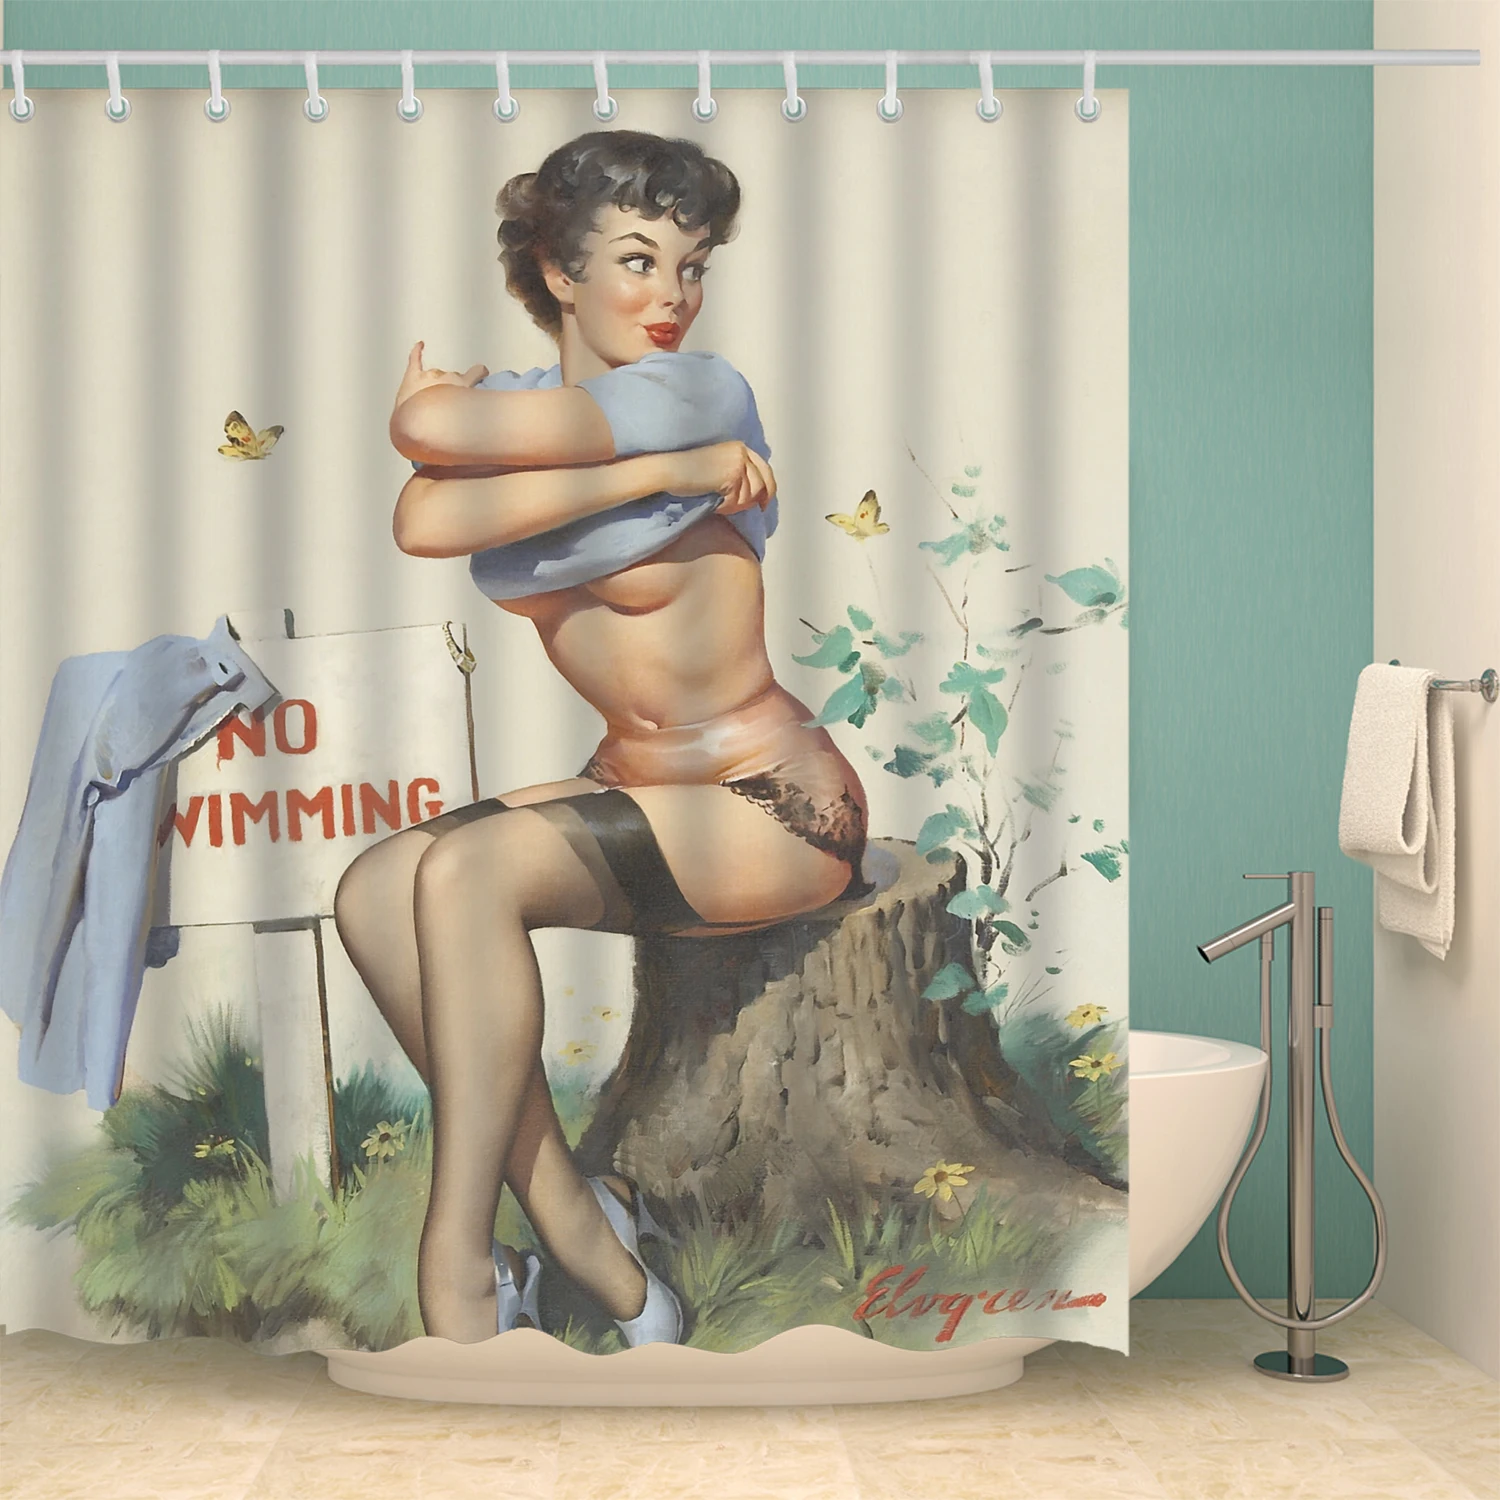 Американская Девушка с 3D принтом сексуальная занавеска s с 12 крючками Водонепроницаемый полиэстер ткань моющаяся ванная комната занавеска для ванной - Цвет: B